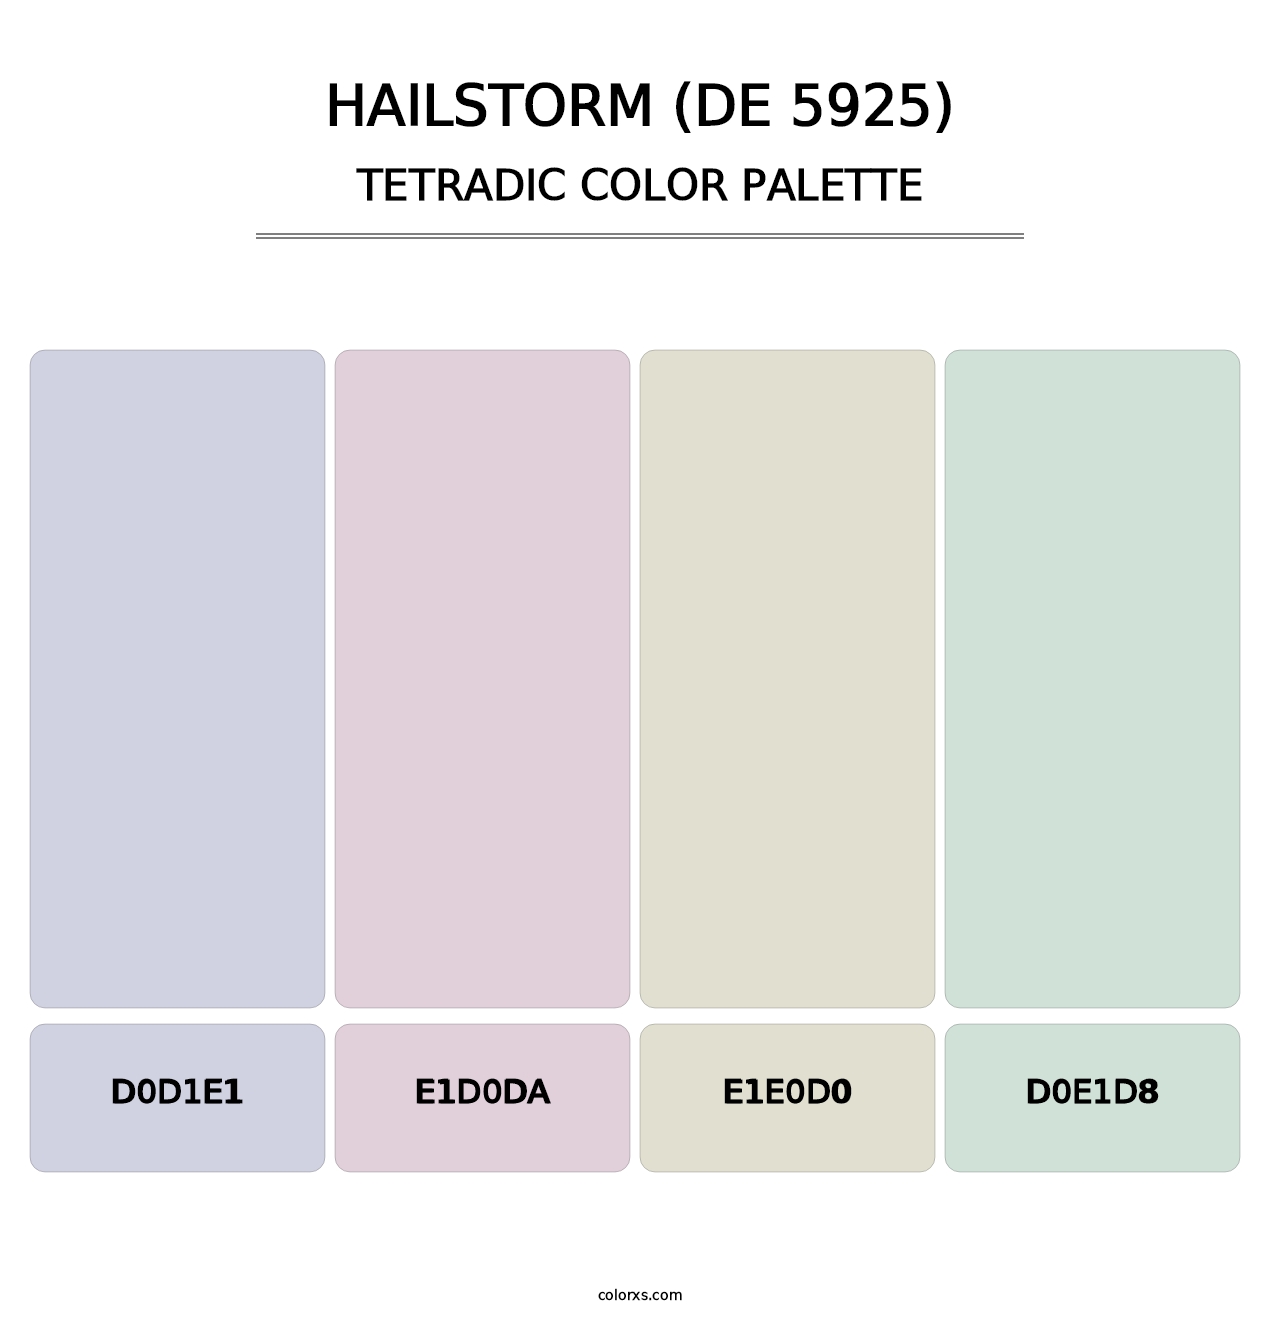 Hailstorm (DE 5925) - Tetradic Color Palette